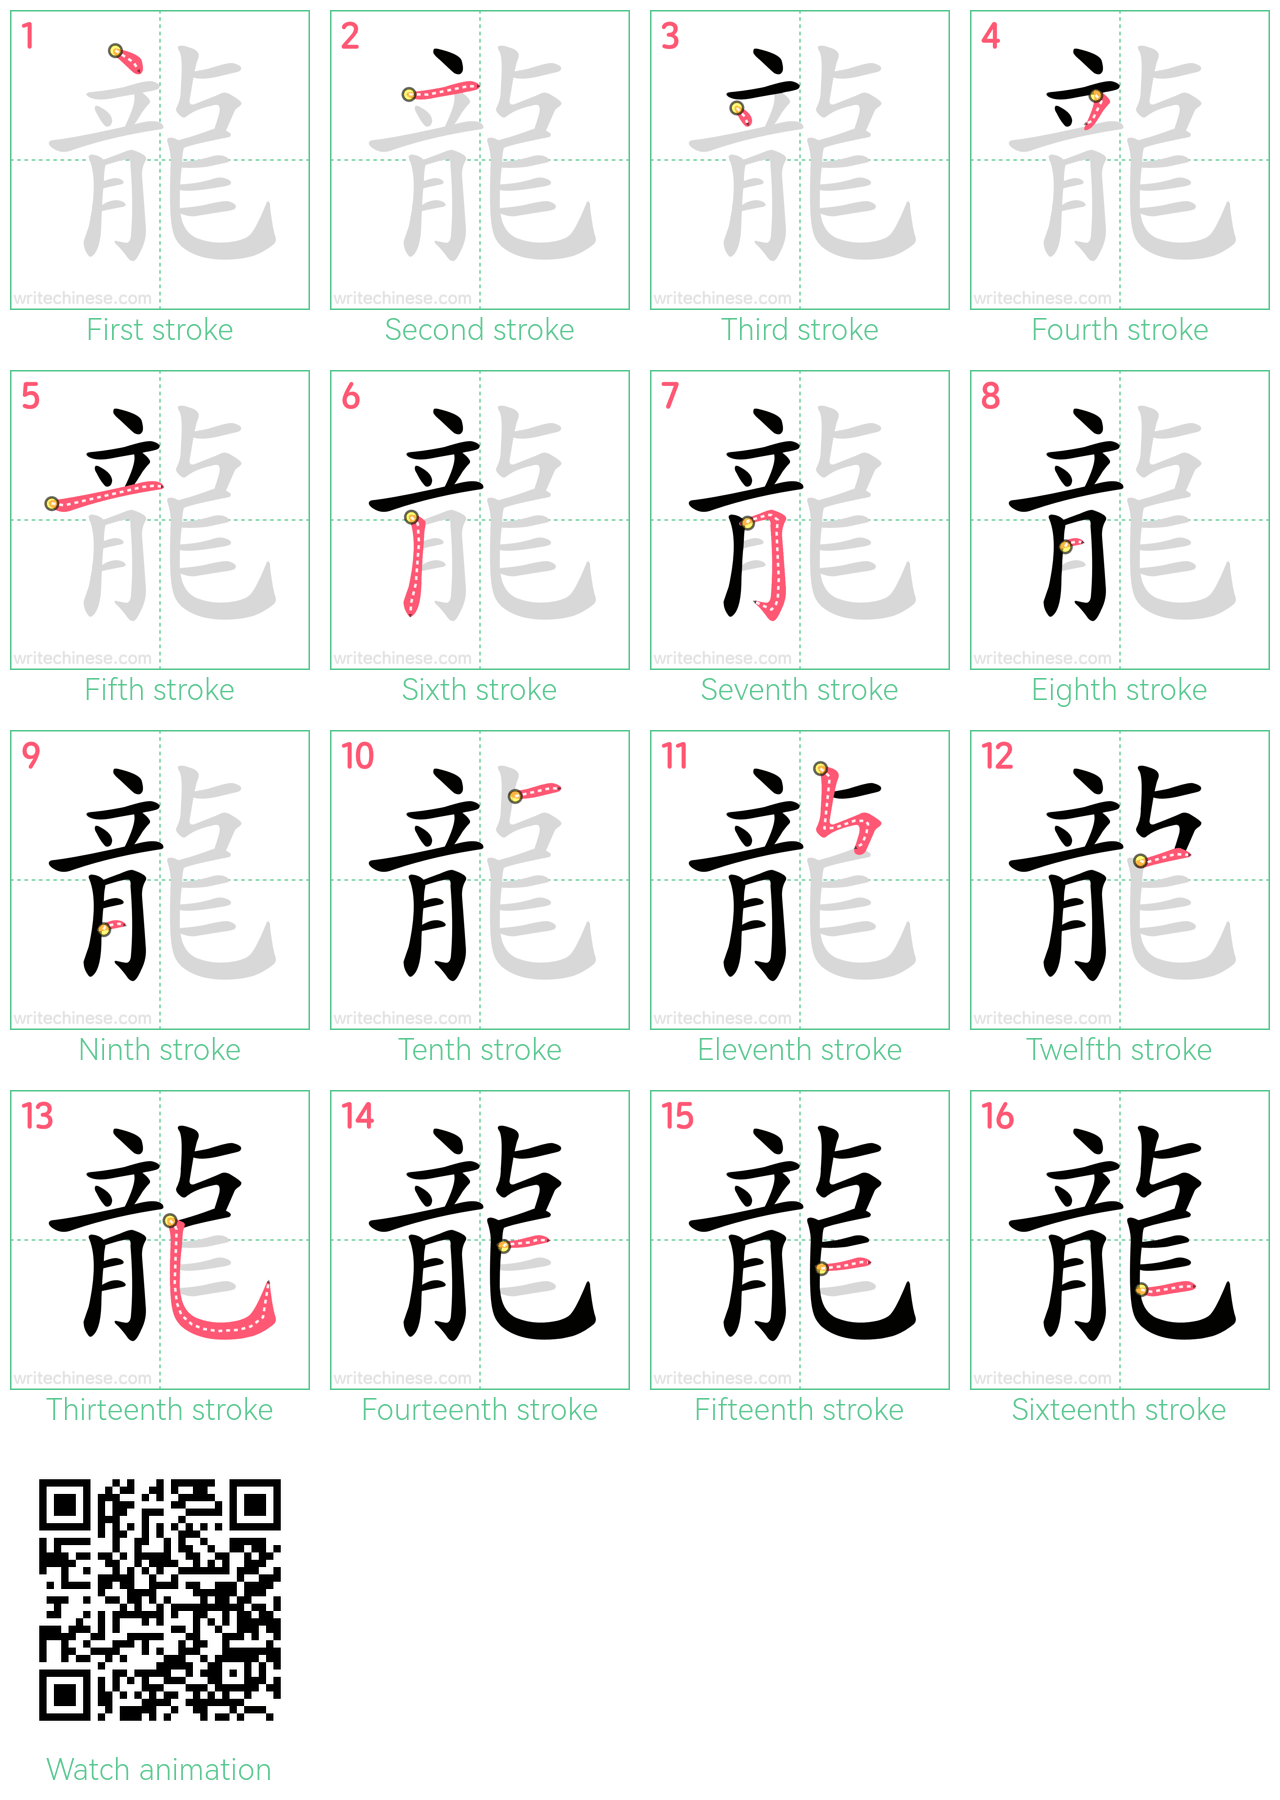 龍 step-by-step stroke order diagrams